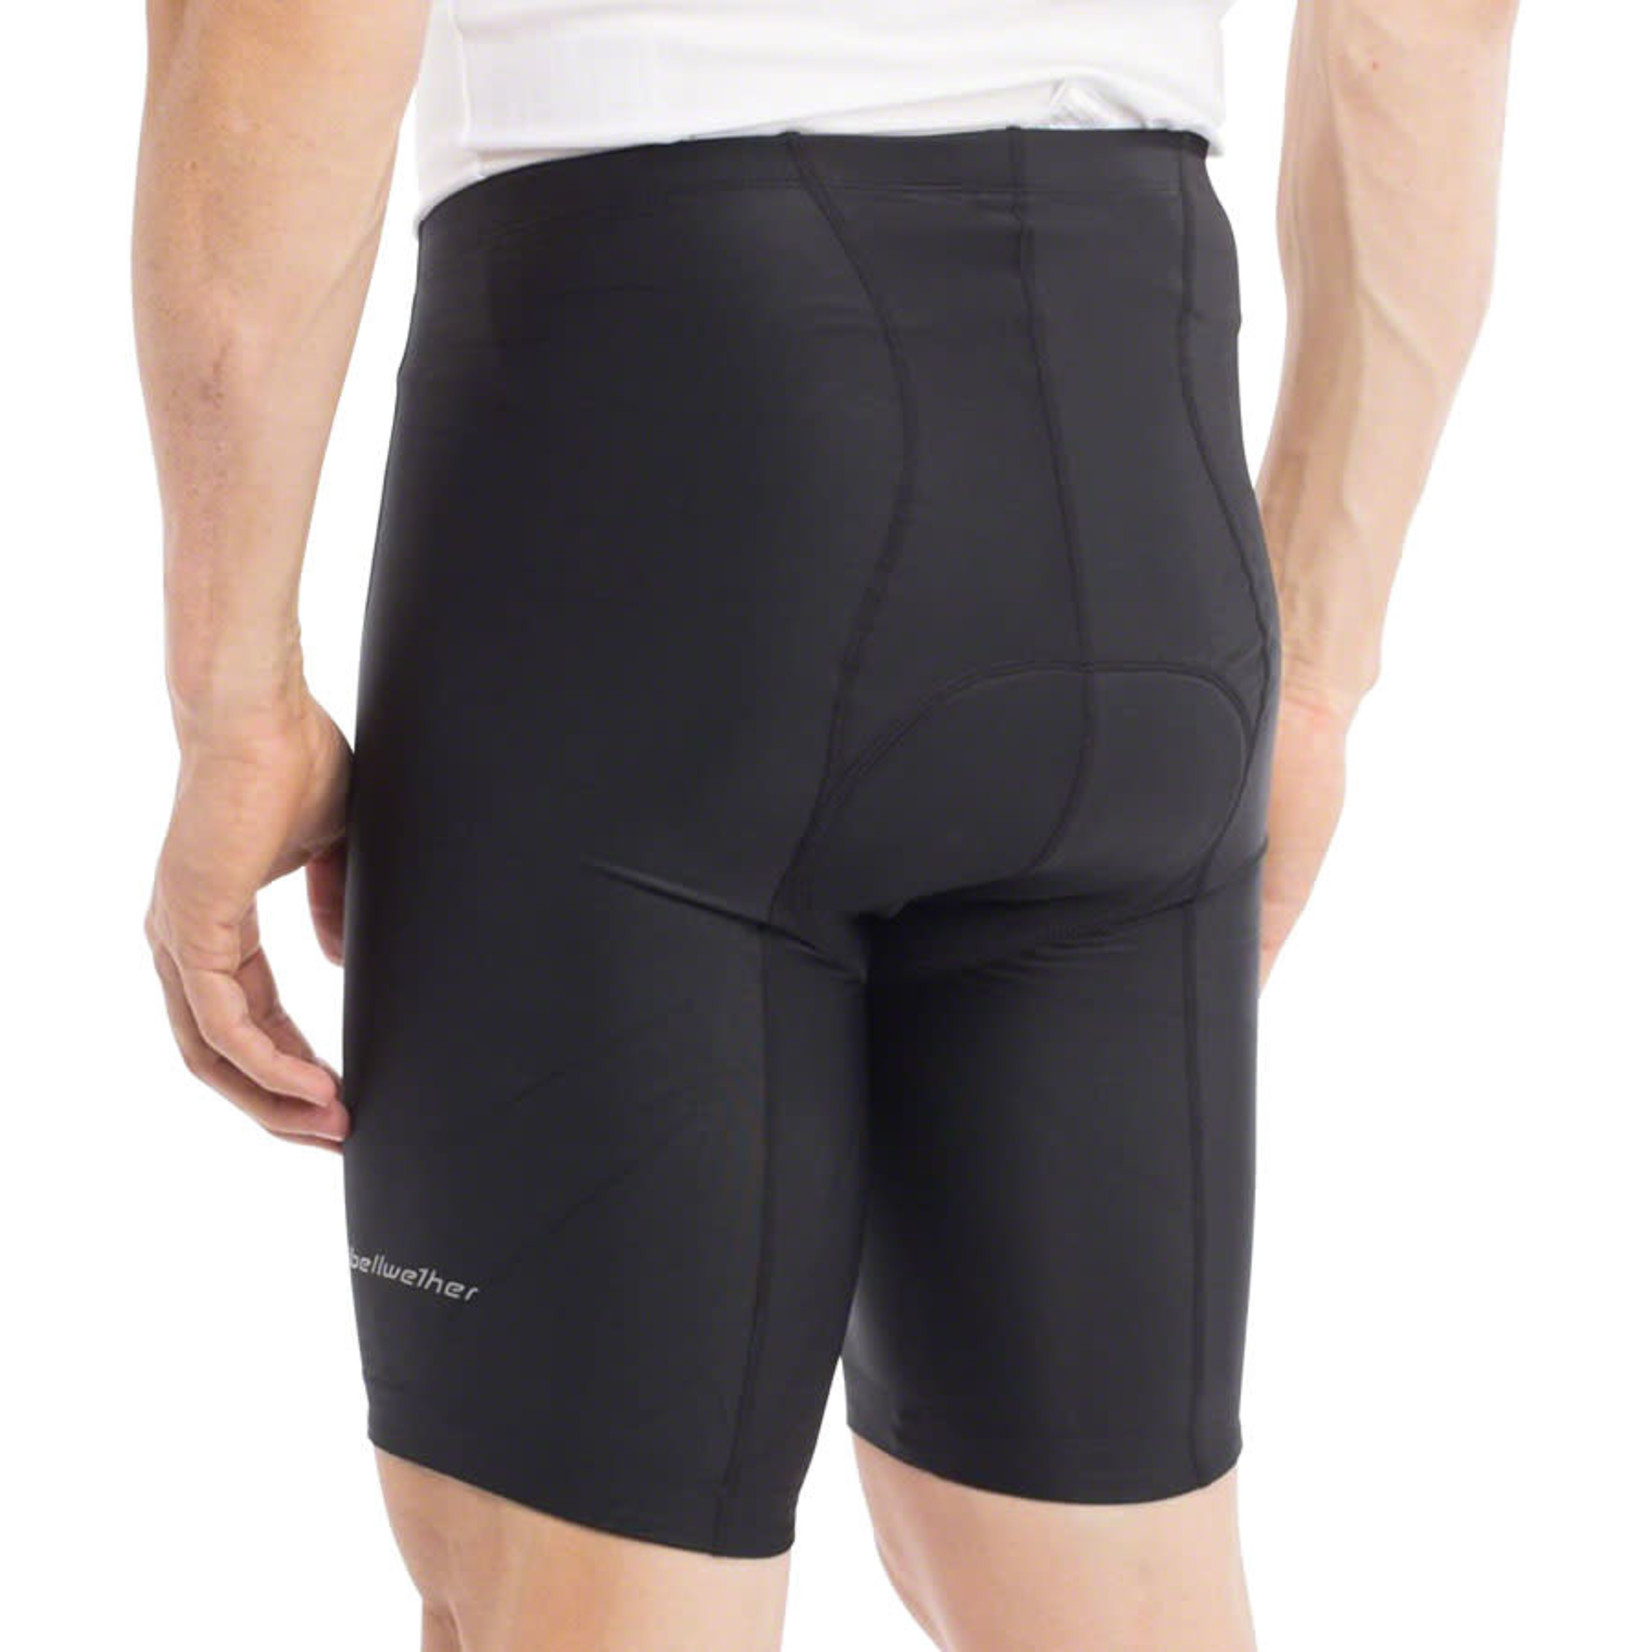 Bellwether Bellwether O2 Shorts - Black, X-Large, Men's